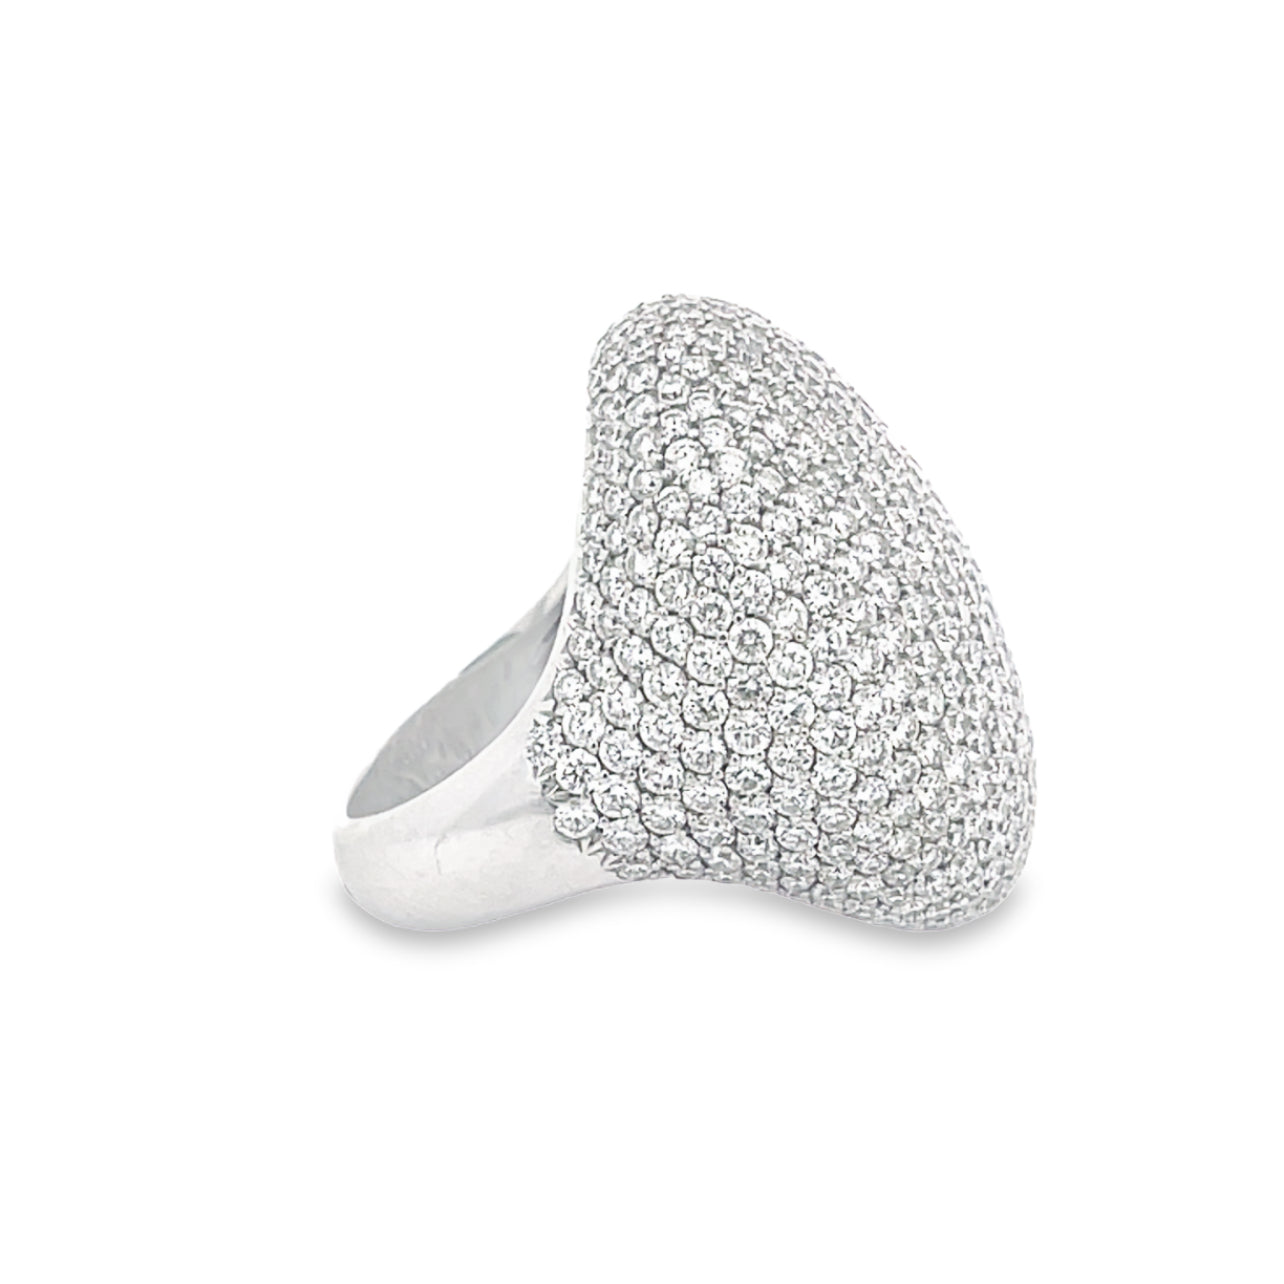 Diamond look a like ladies rings designs/925 italian silver stone ladies  rings - YouTube